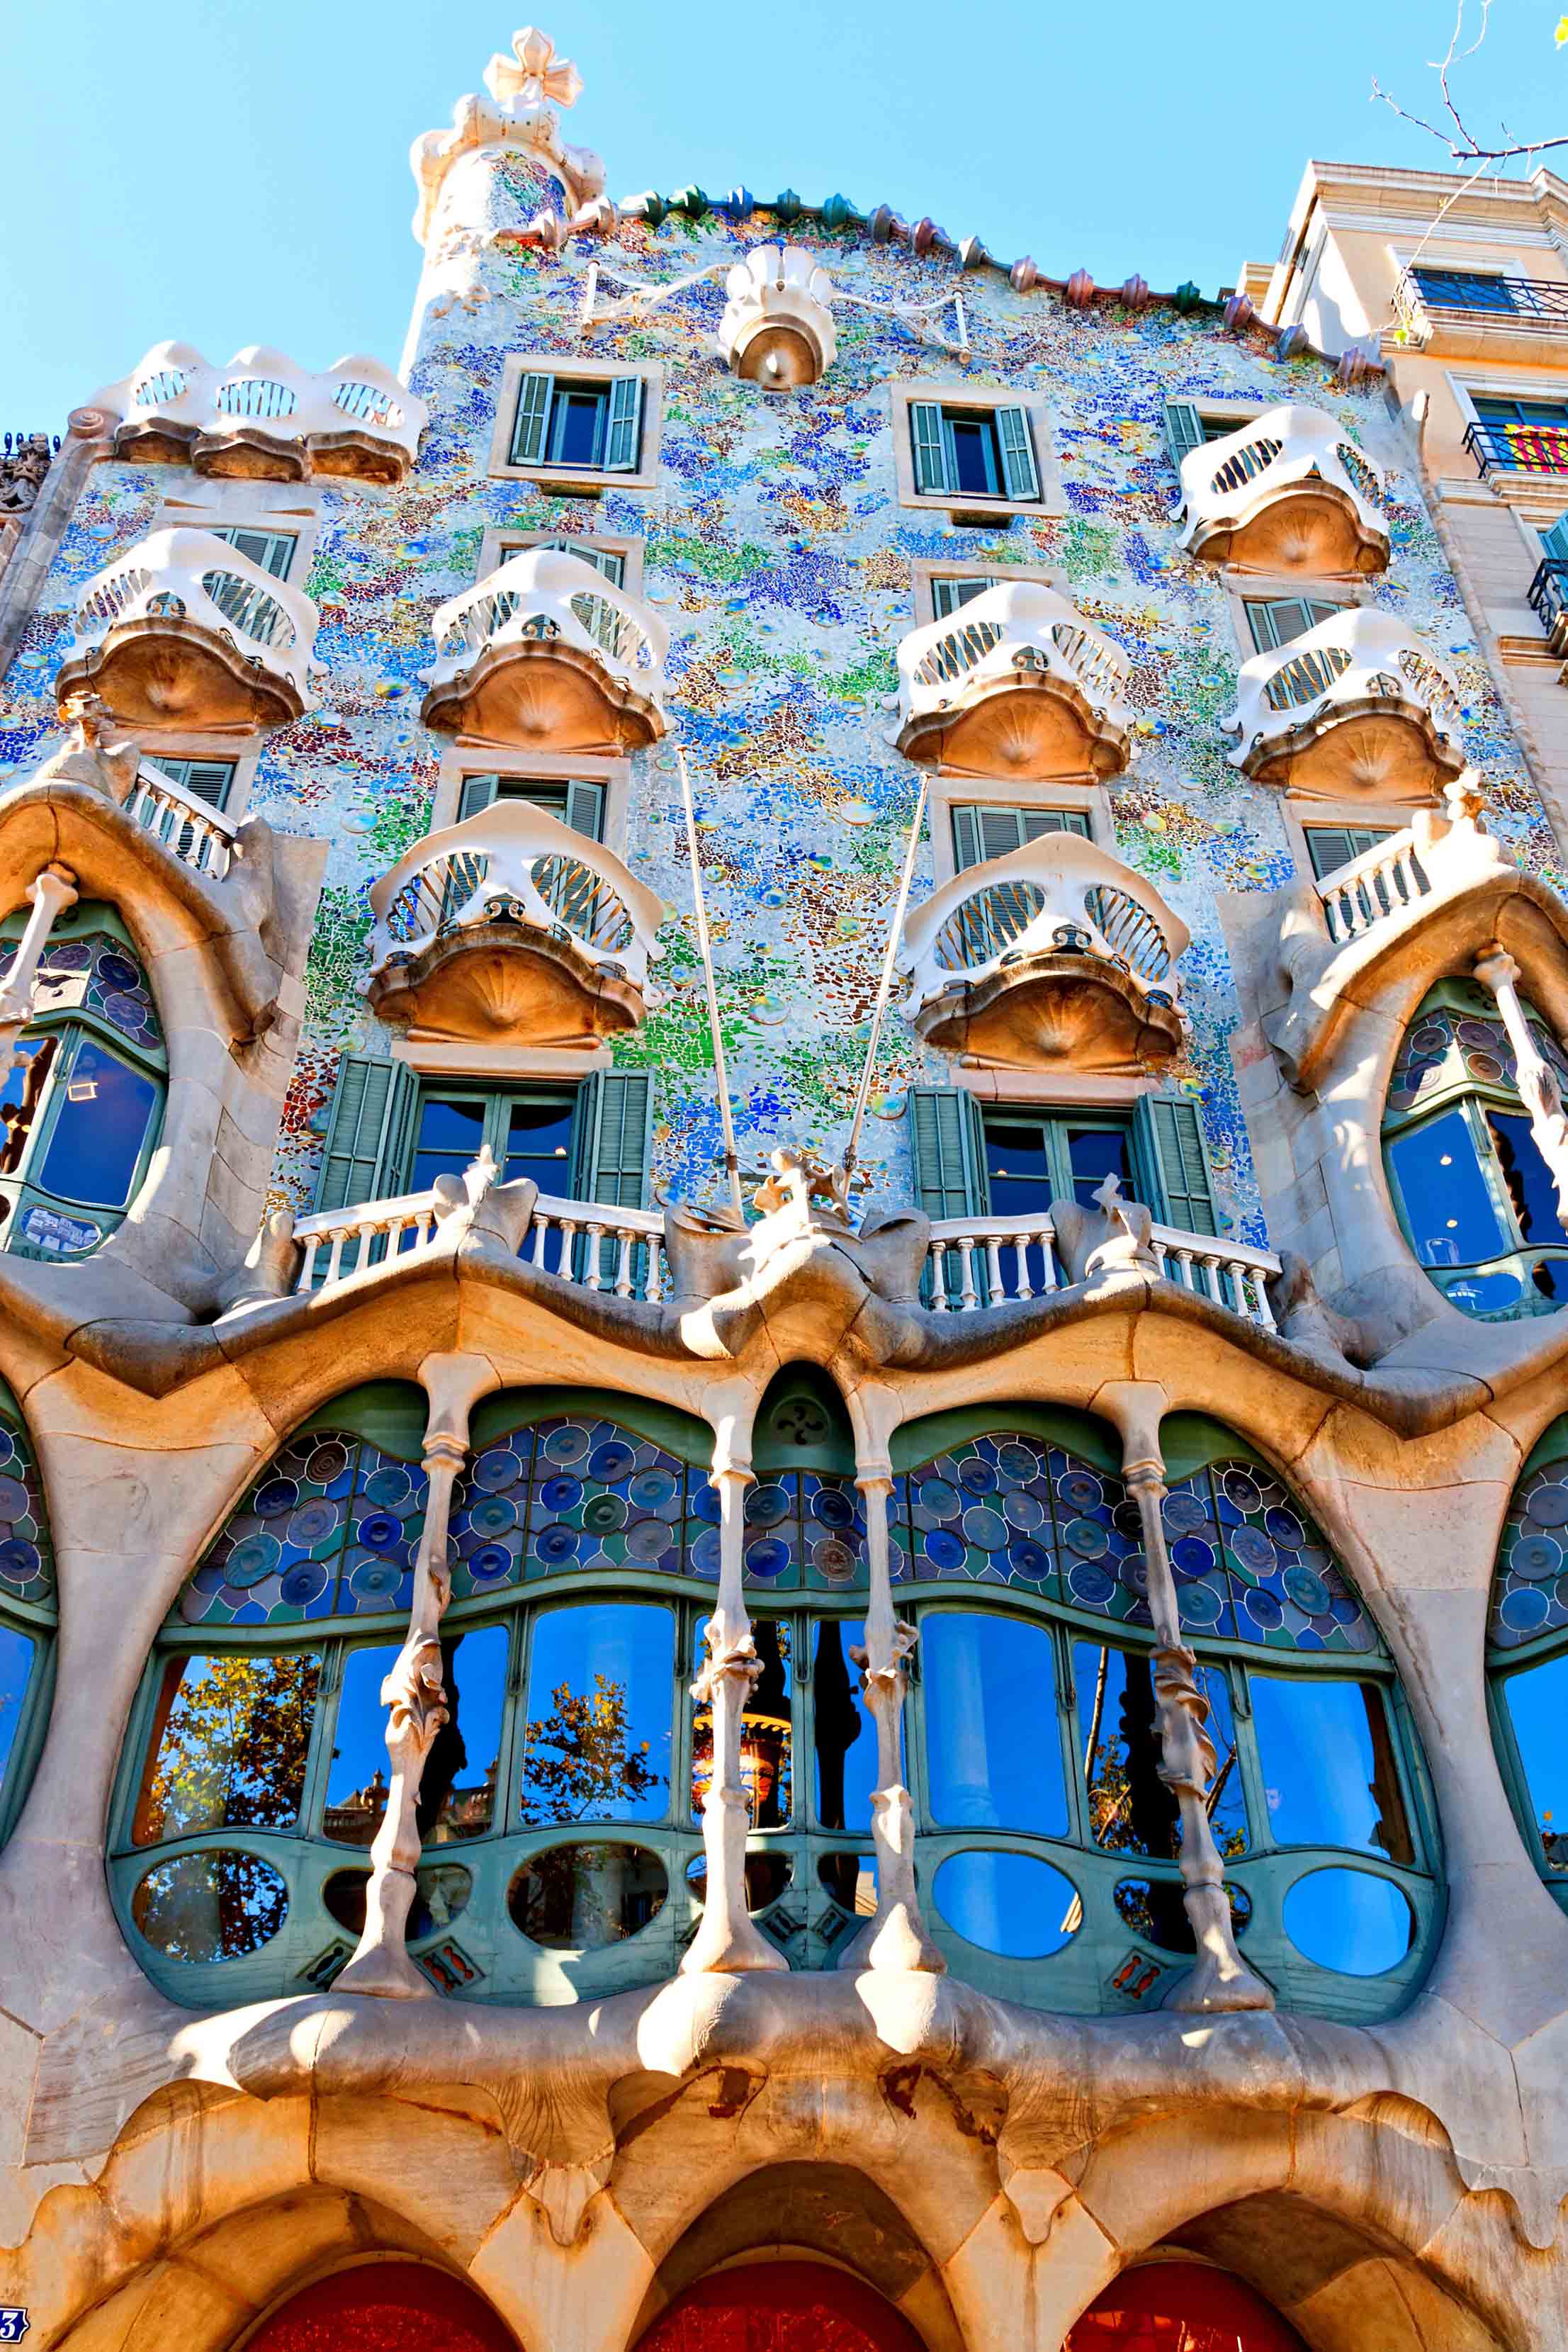 Творения гауди. Гауди Архитектор Испания Барселона. Архитектор Испании Антонио Гауди. Антонио Гауди архитектура Барселоны. Дом Бальо Гауди - Барселона, Испания.